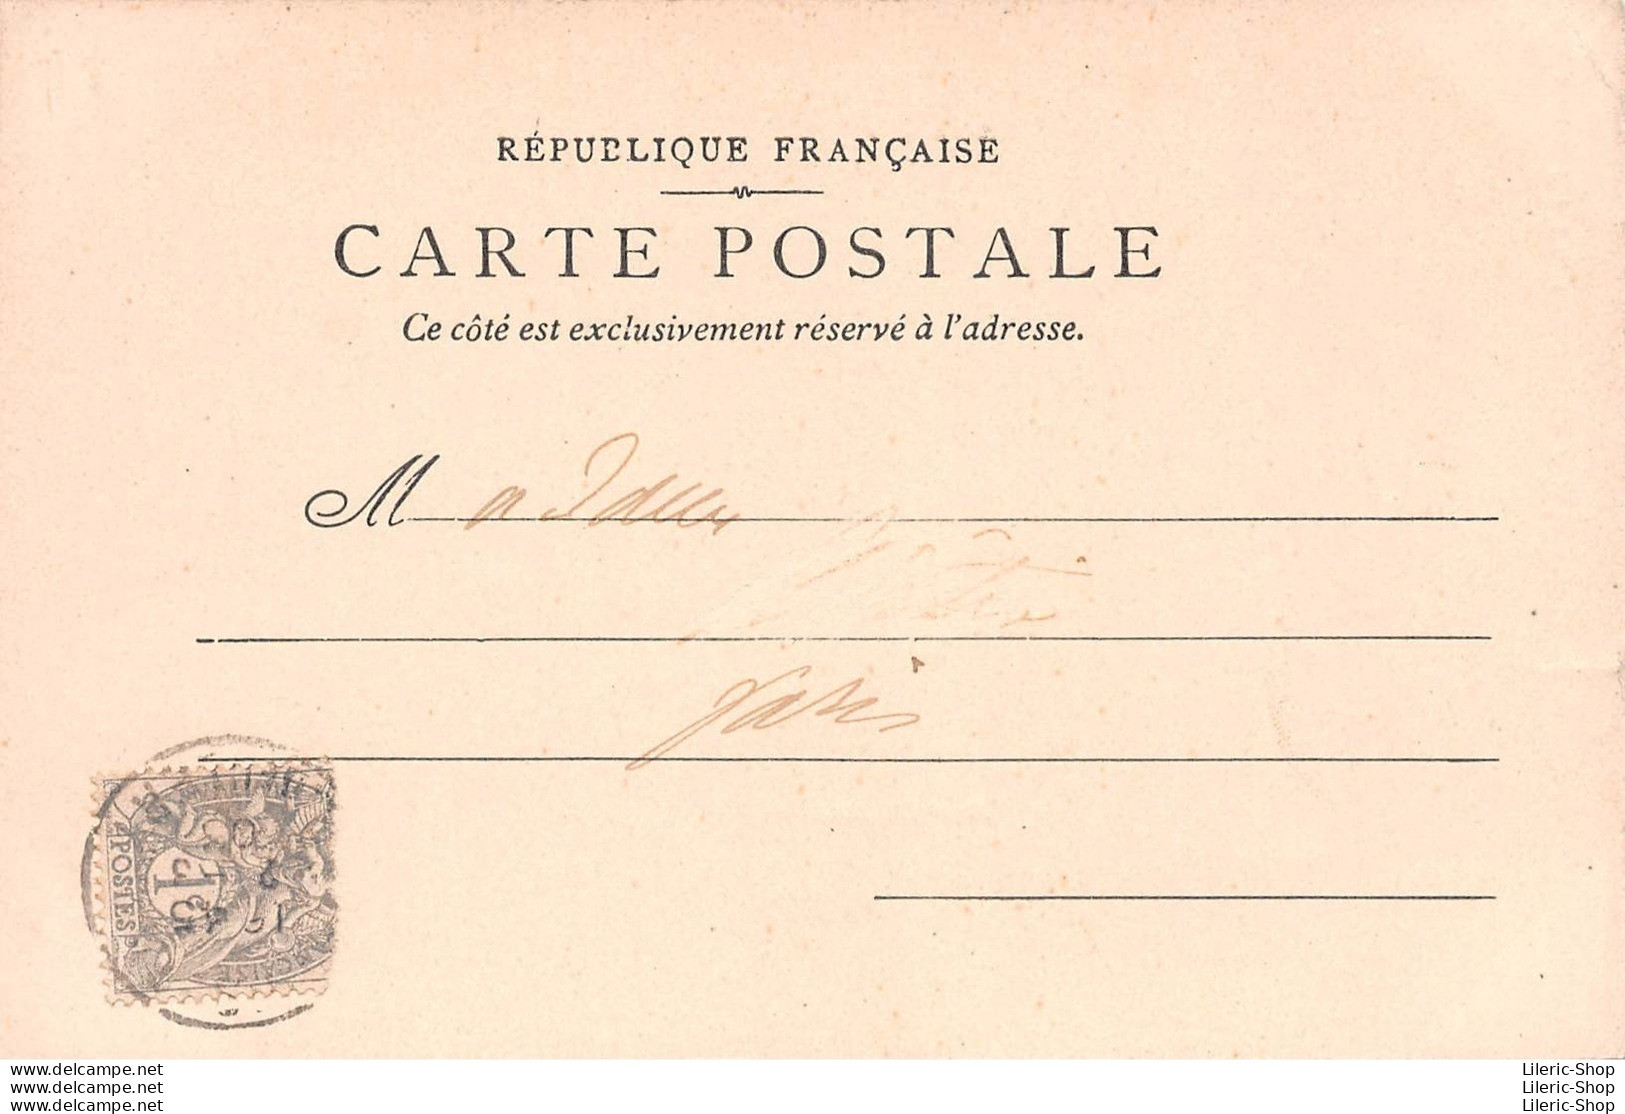 Musée Carnavalet - Journée Du 21 01 1793 - Mort De Louis Capet Sur La Place De La Révolution - Éd. P.S. 1903 CPR - Musei